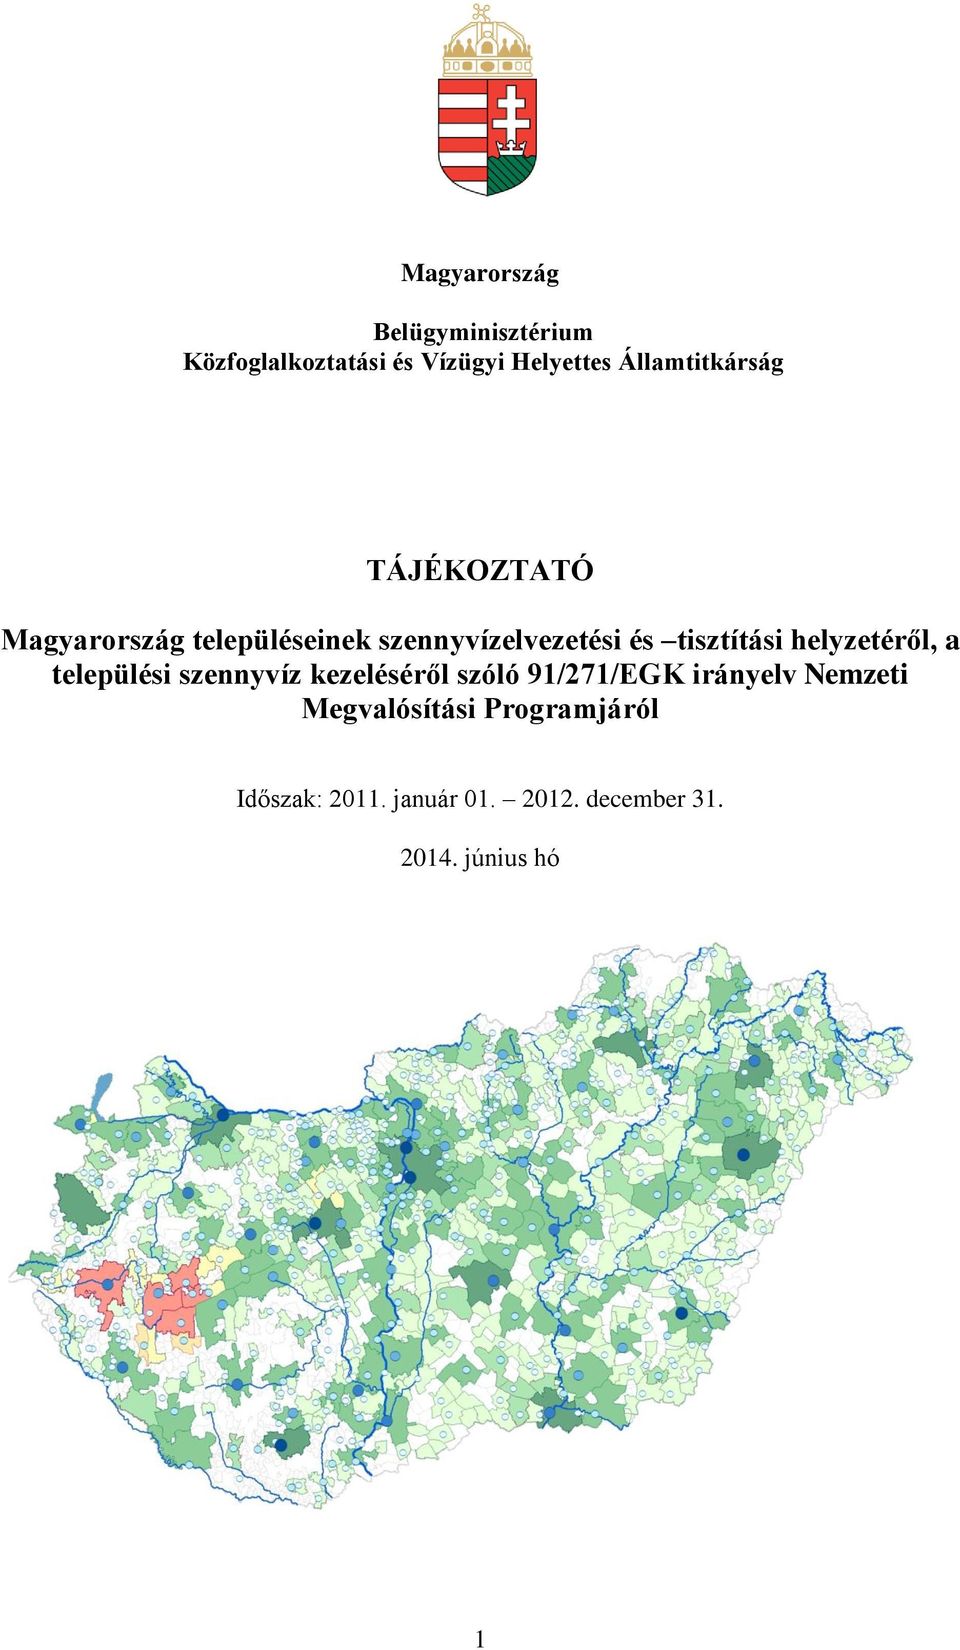 tisztítási helyzetéről, a települési szennyvíz kezeléséről szóló 91/271/EGK